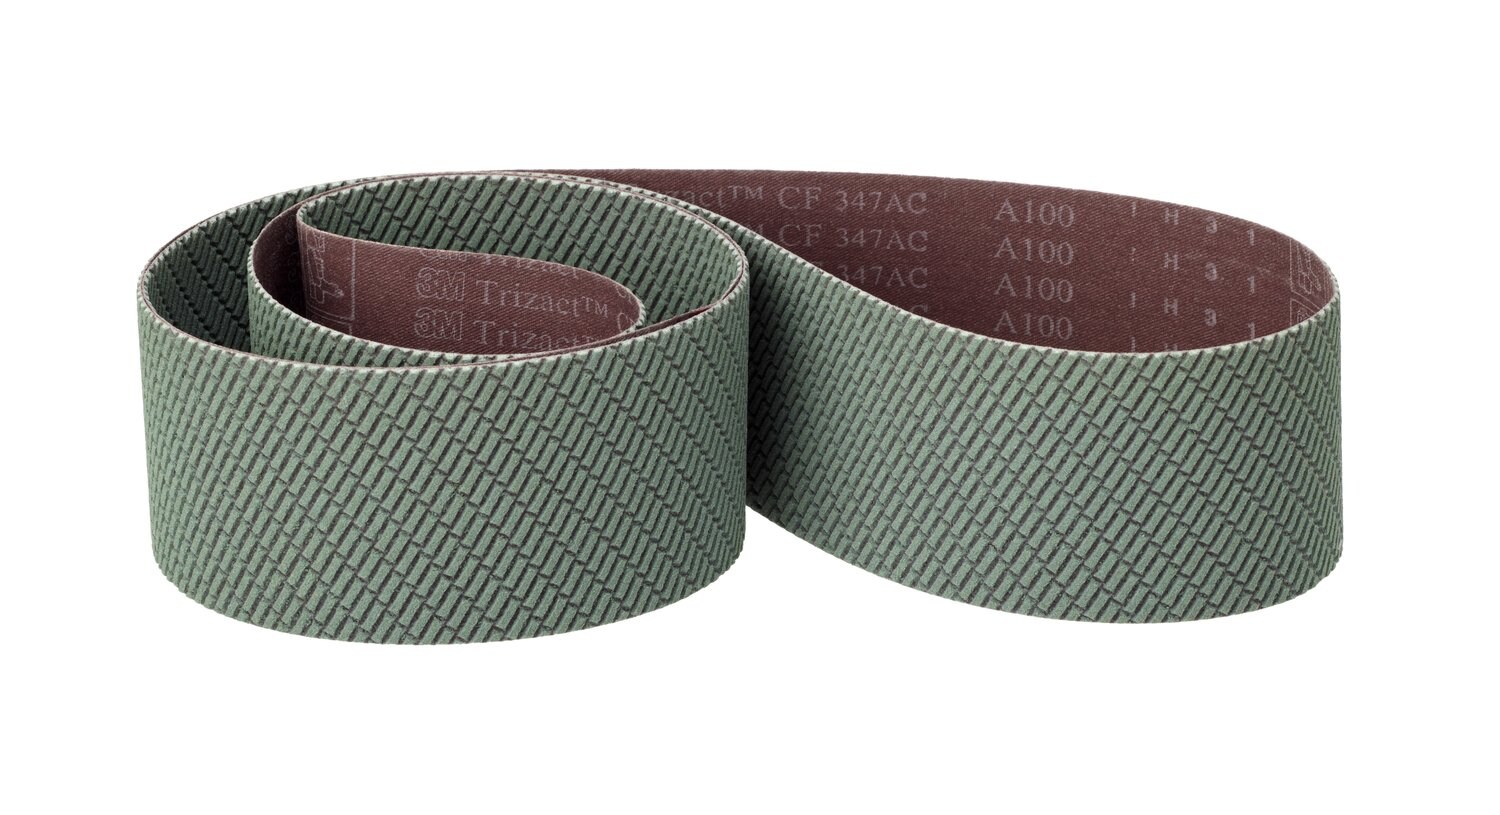 7100195344 - 3M Trizact CF Cloth Belt 347FC, A100 X-weight, 6 in x 148 in,
Film-lok, No Flex